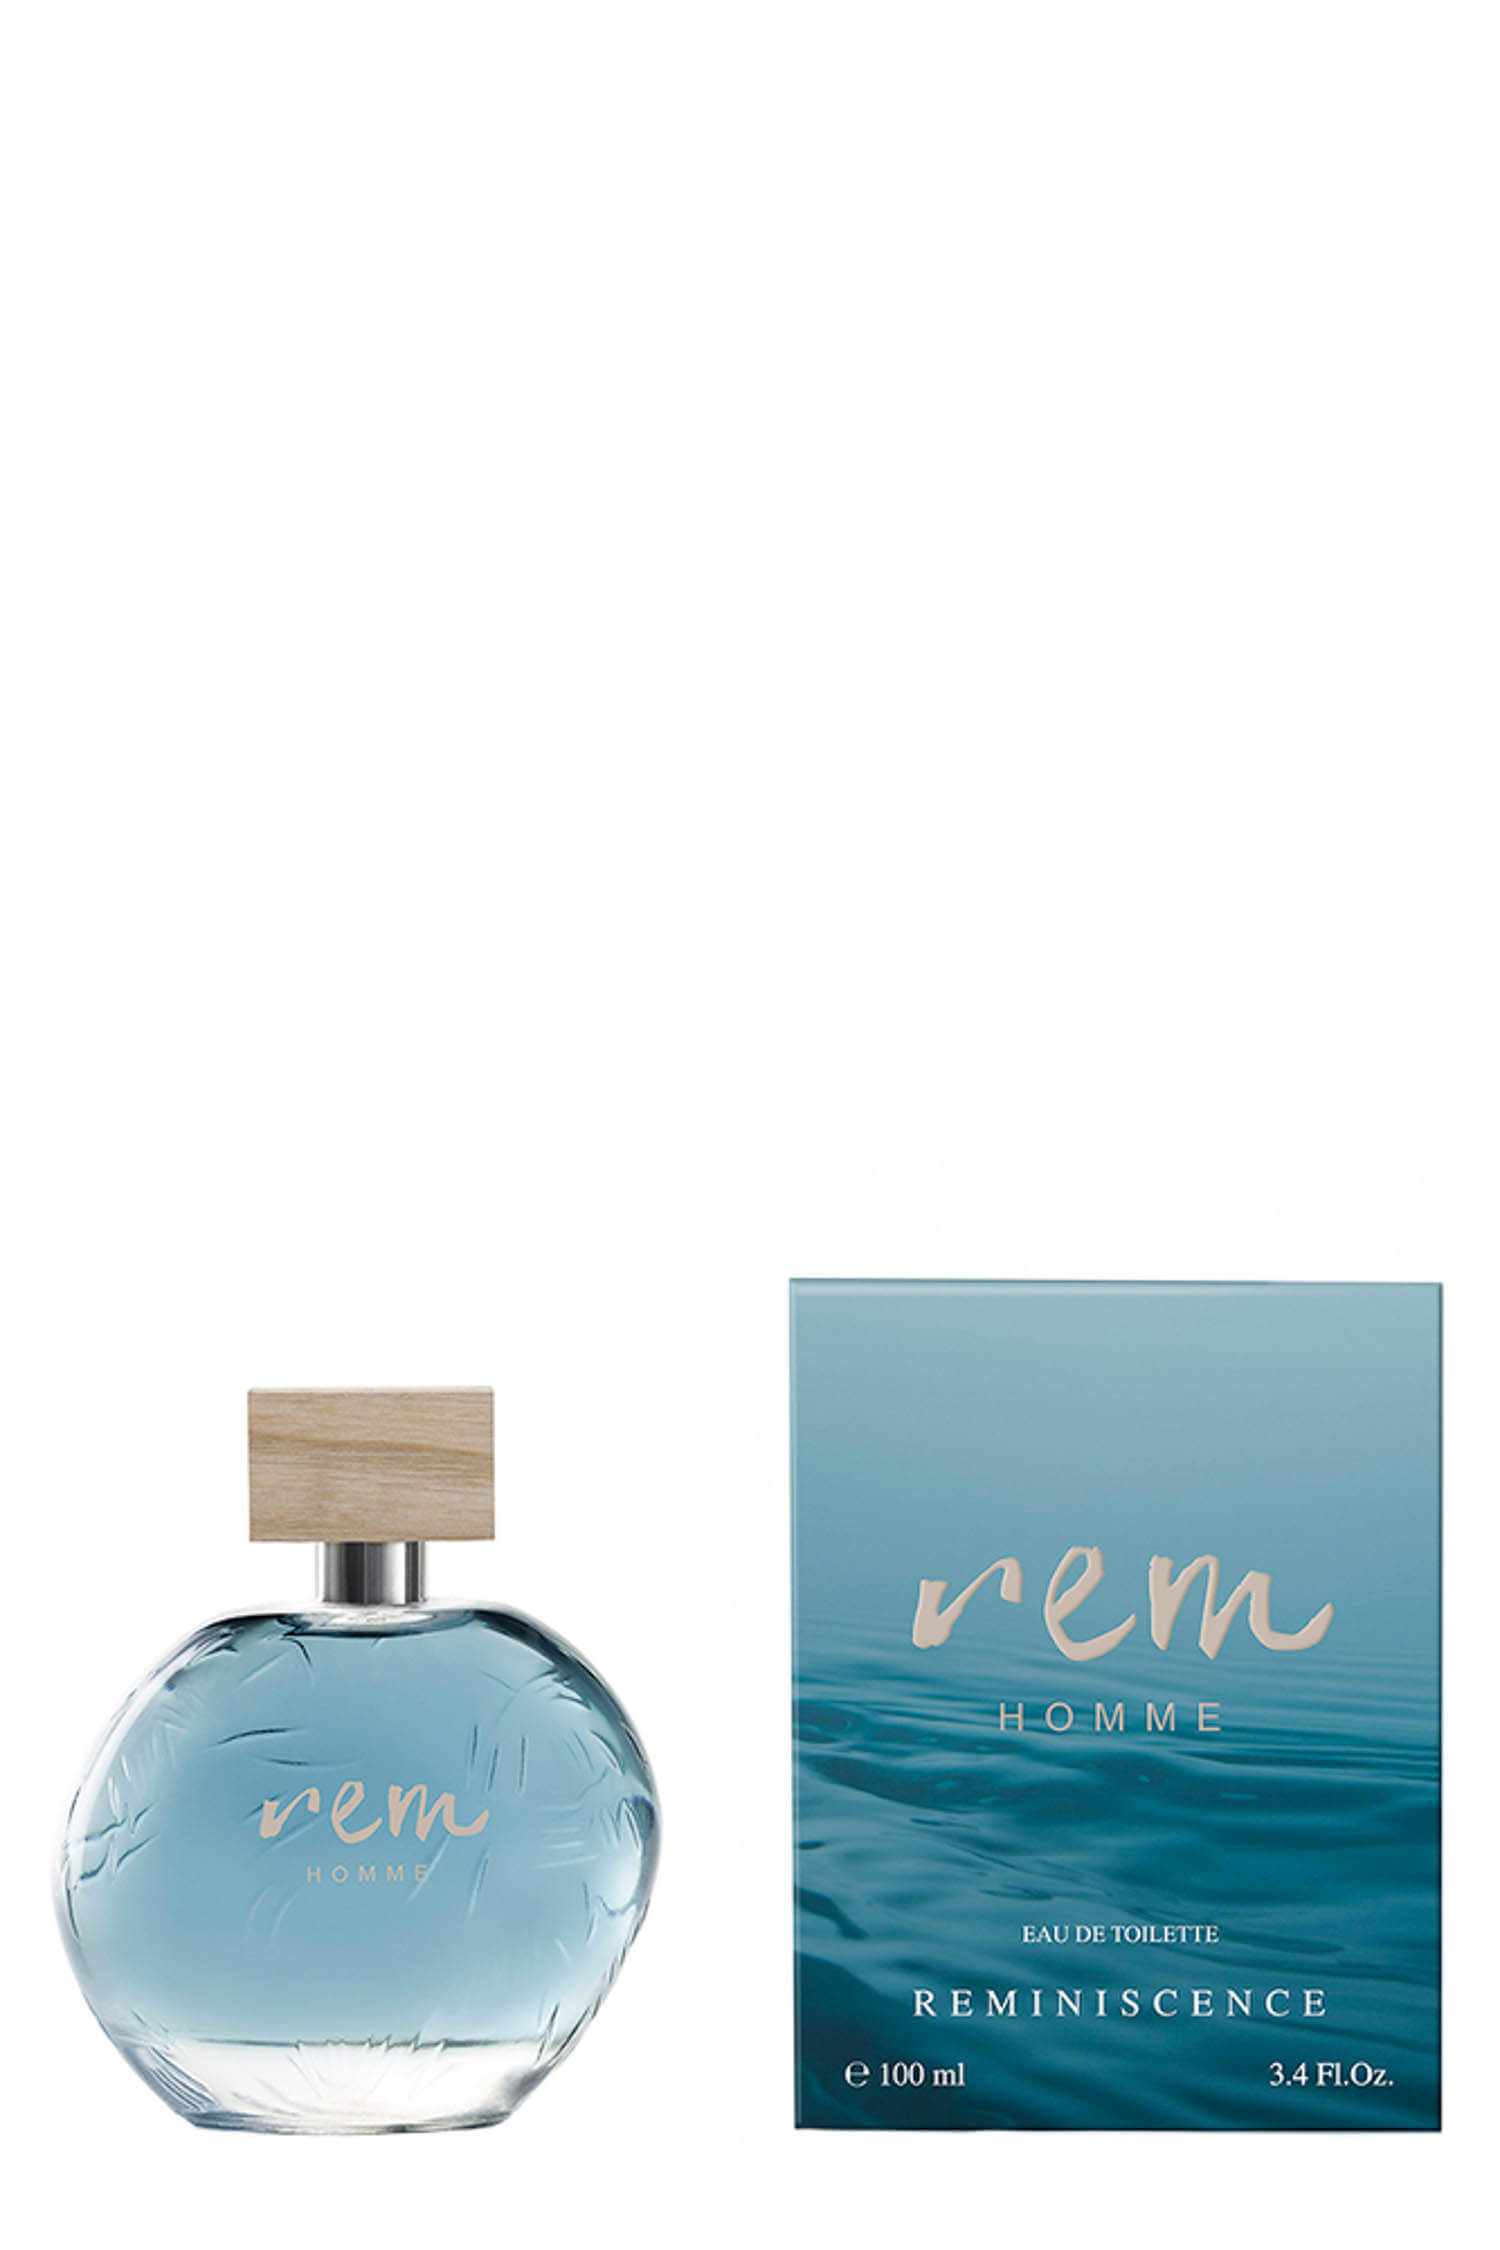 Rem homme 100 ml Reminiscence Parfums